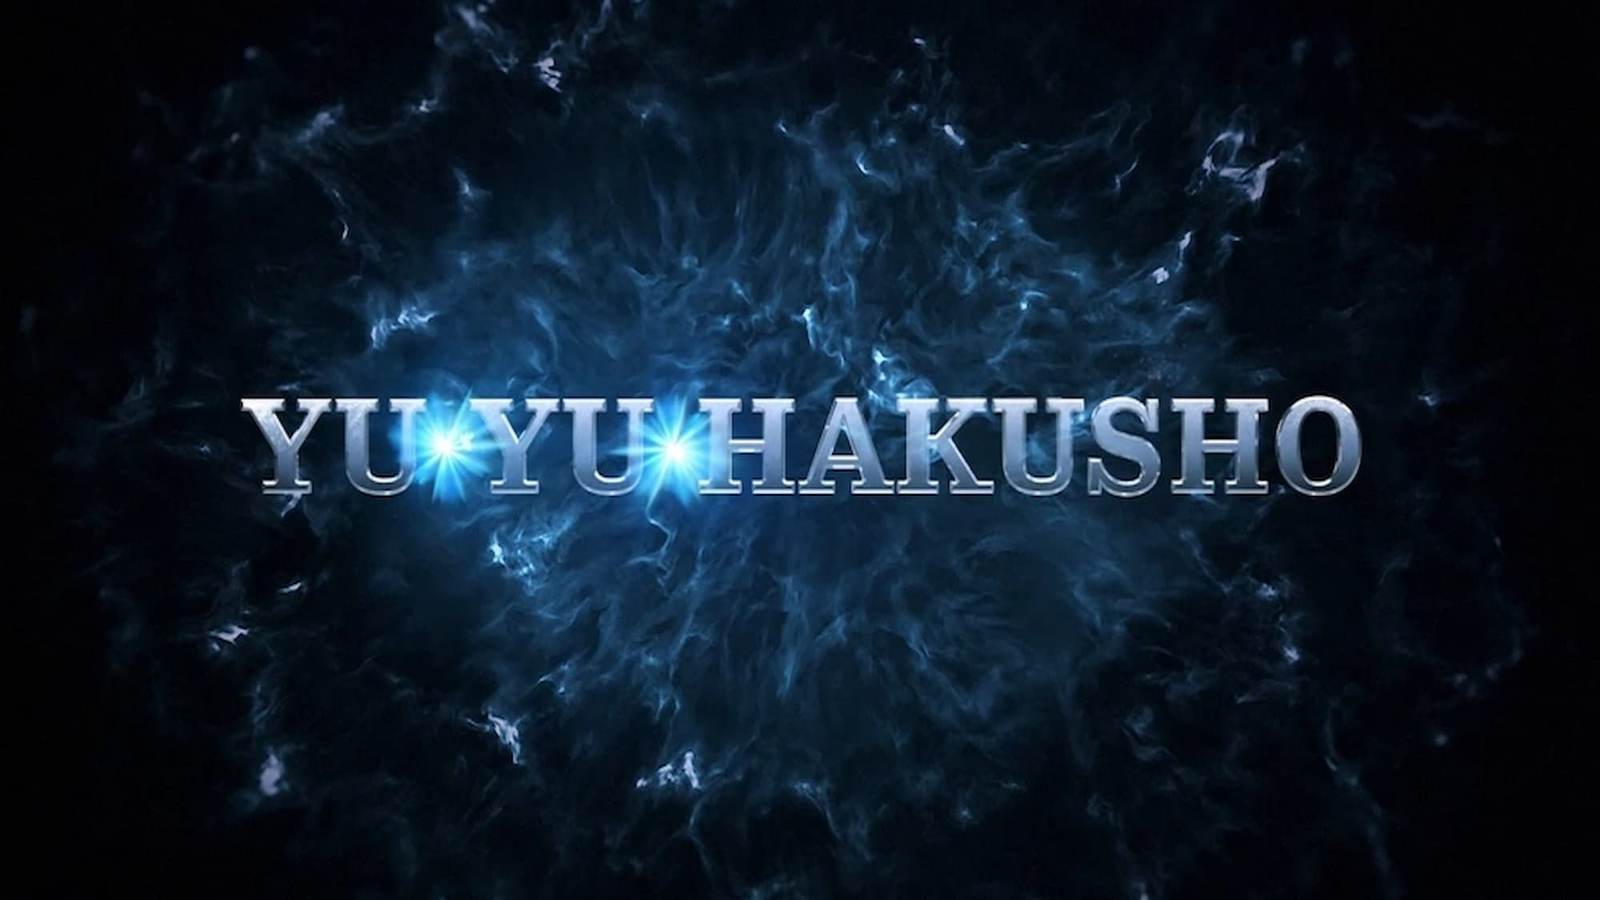 Netflix 'Yū Yū Hakusho' Live-Action Series Announcement